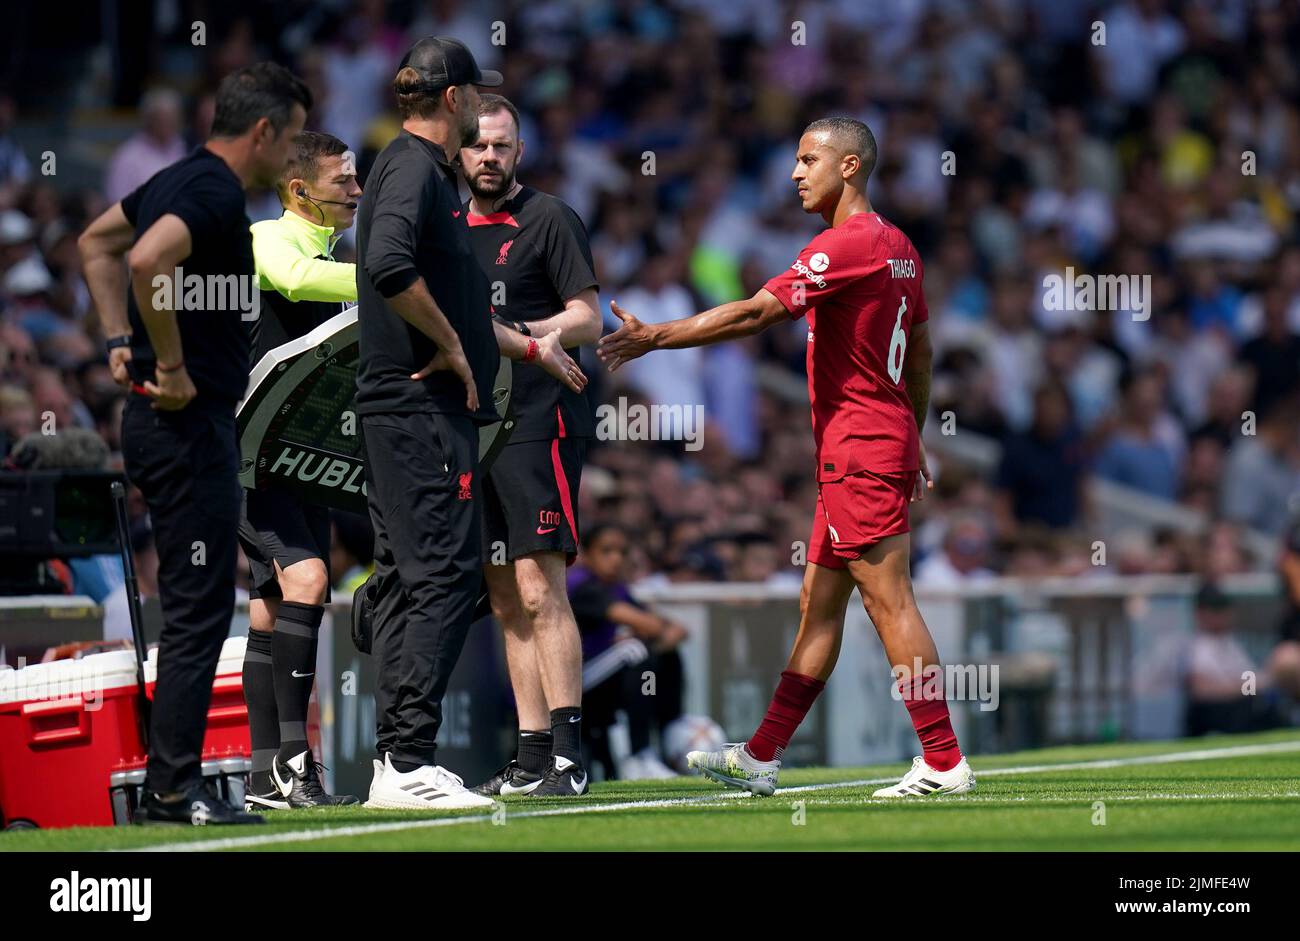 El Liverpool Thiago Alcantara sale lesionado durante el partido de la Premier League en Craven Cottage, Londres. Fecha de la foto: Sábado 6 de agosto de 2022. Foto de stock